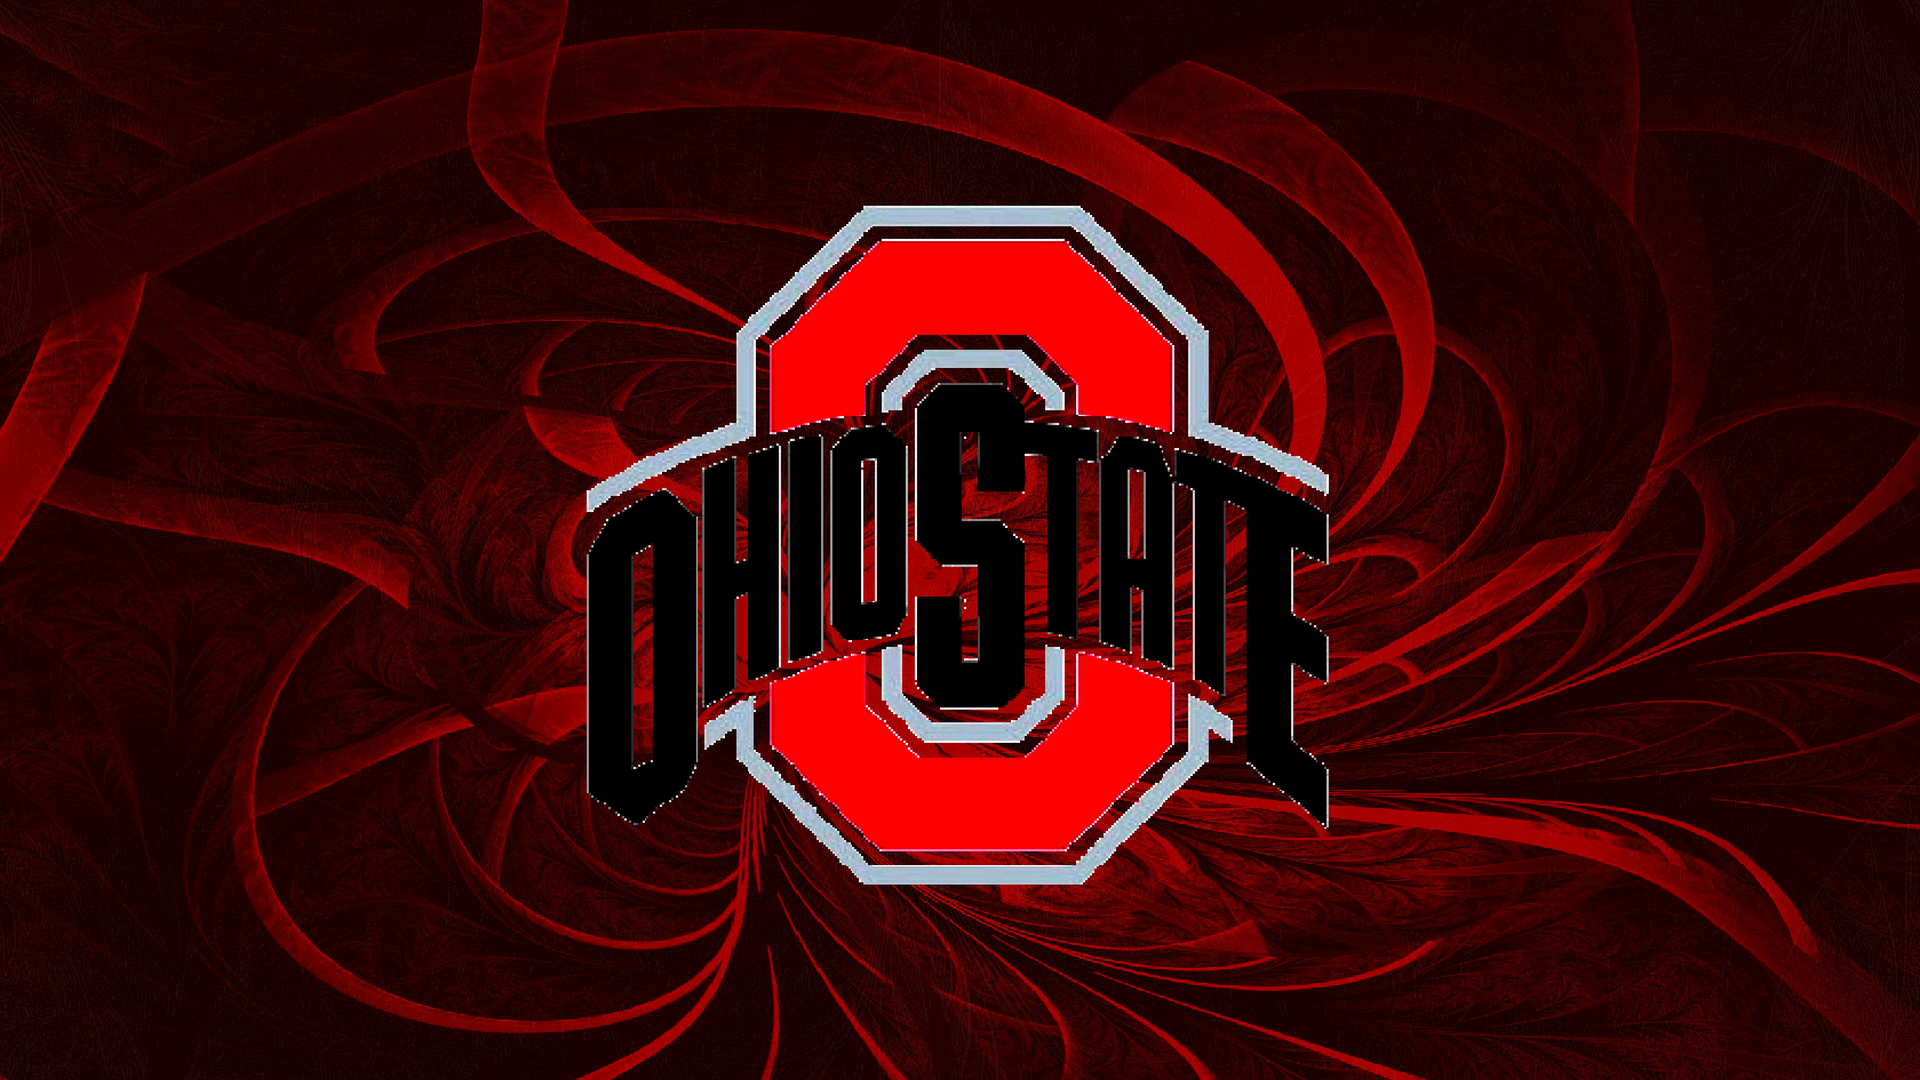 Ohio state Logos